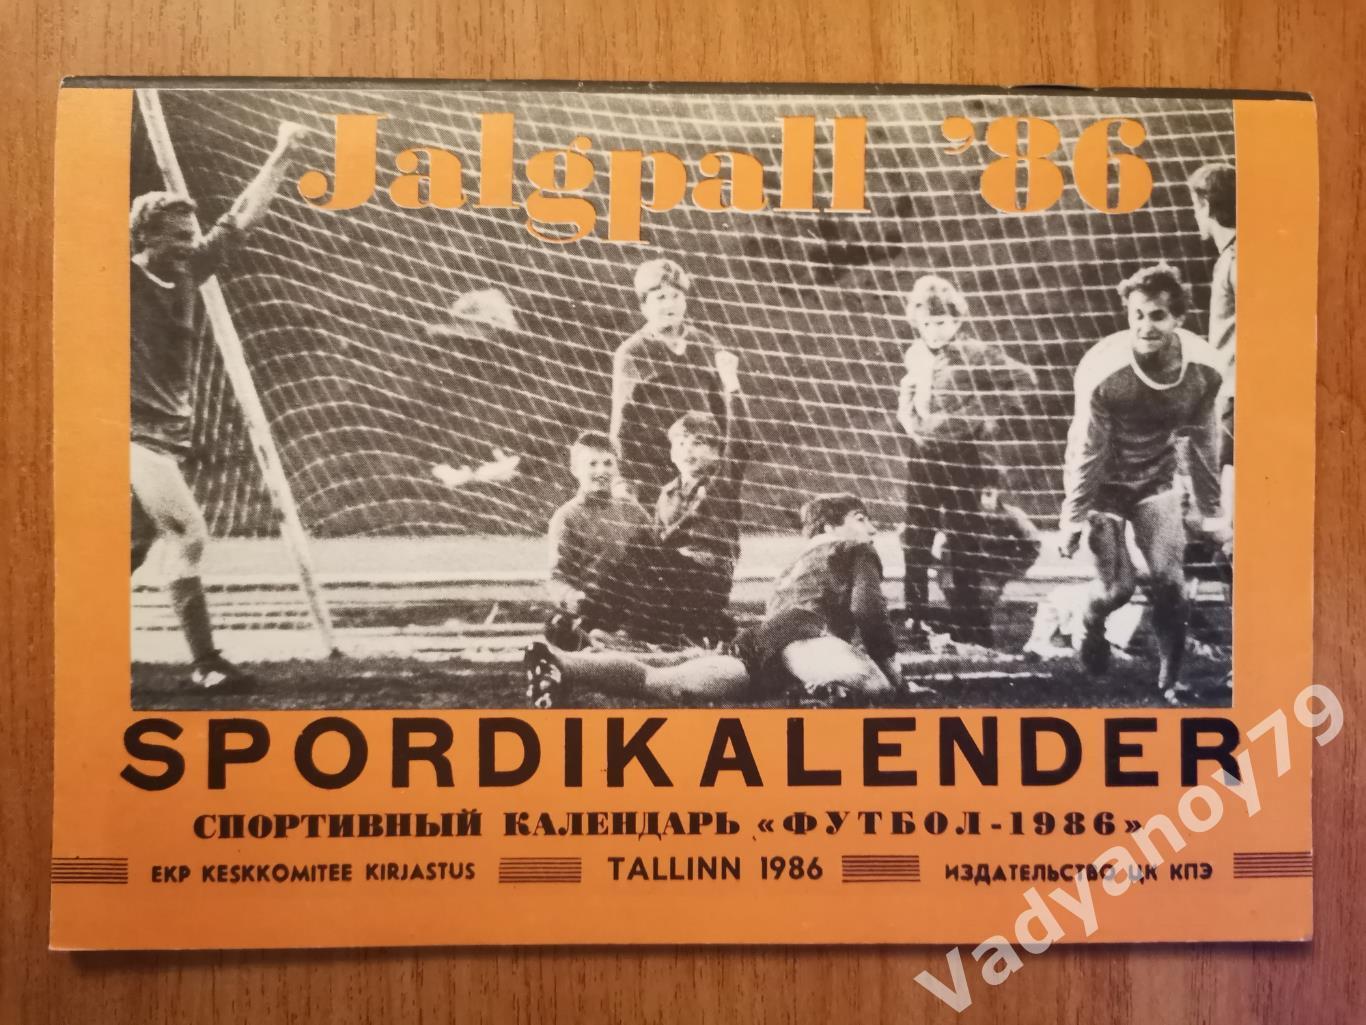 Спортивный календарь Футбол-1986 Таллин/Таллинн (ЭССР/Эстония)